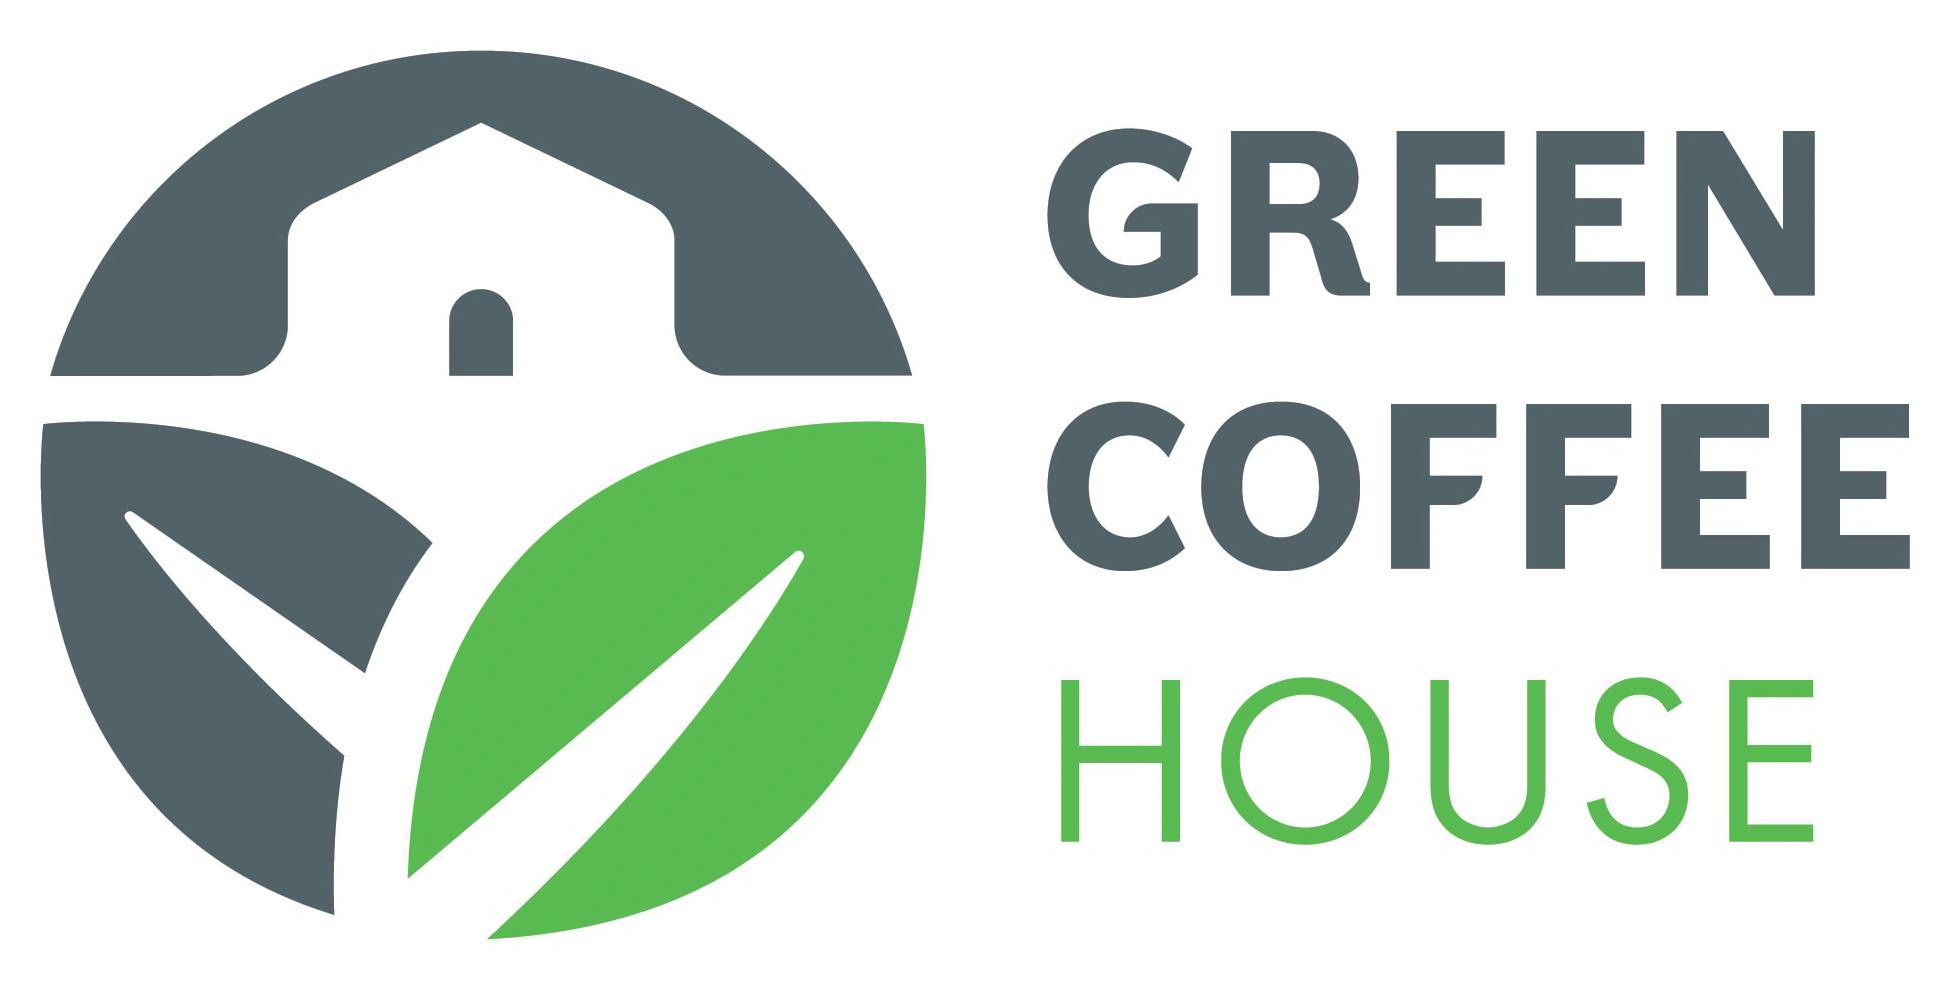  GREEN COFFEE HOUSE